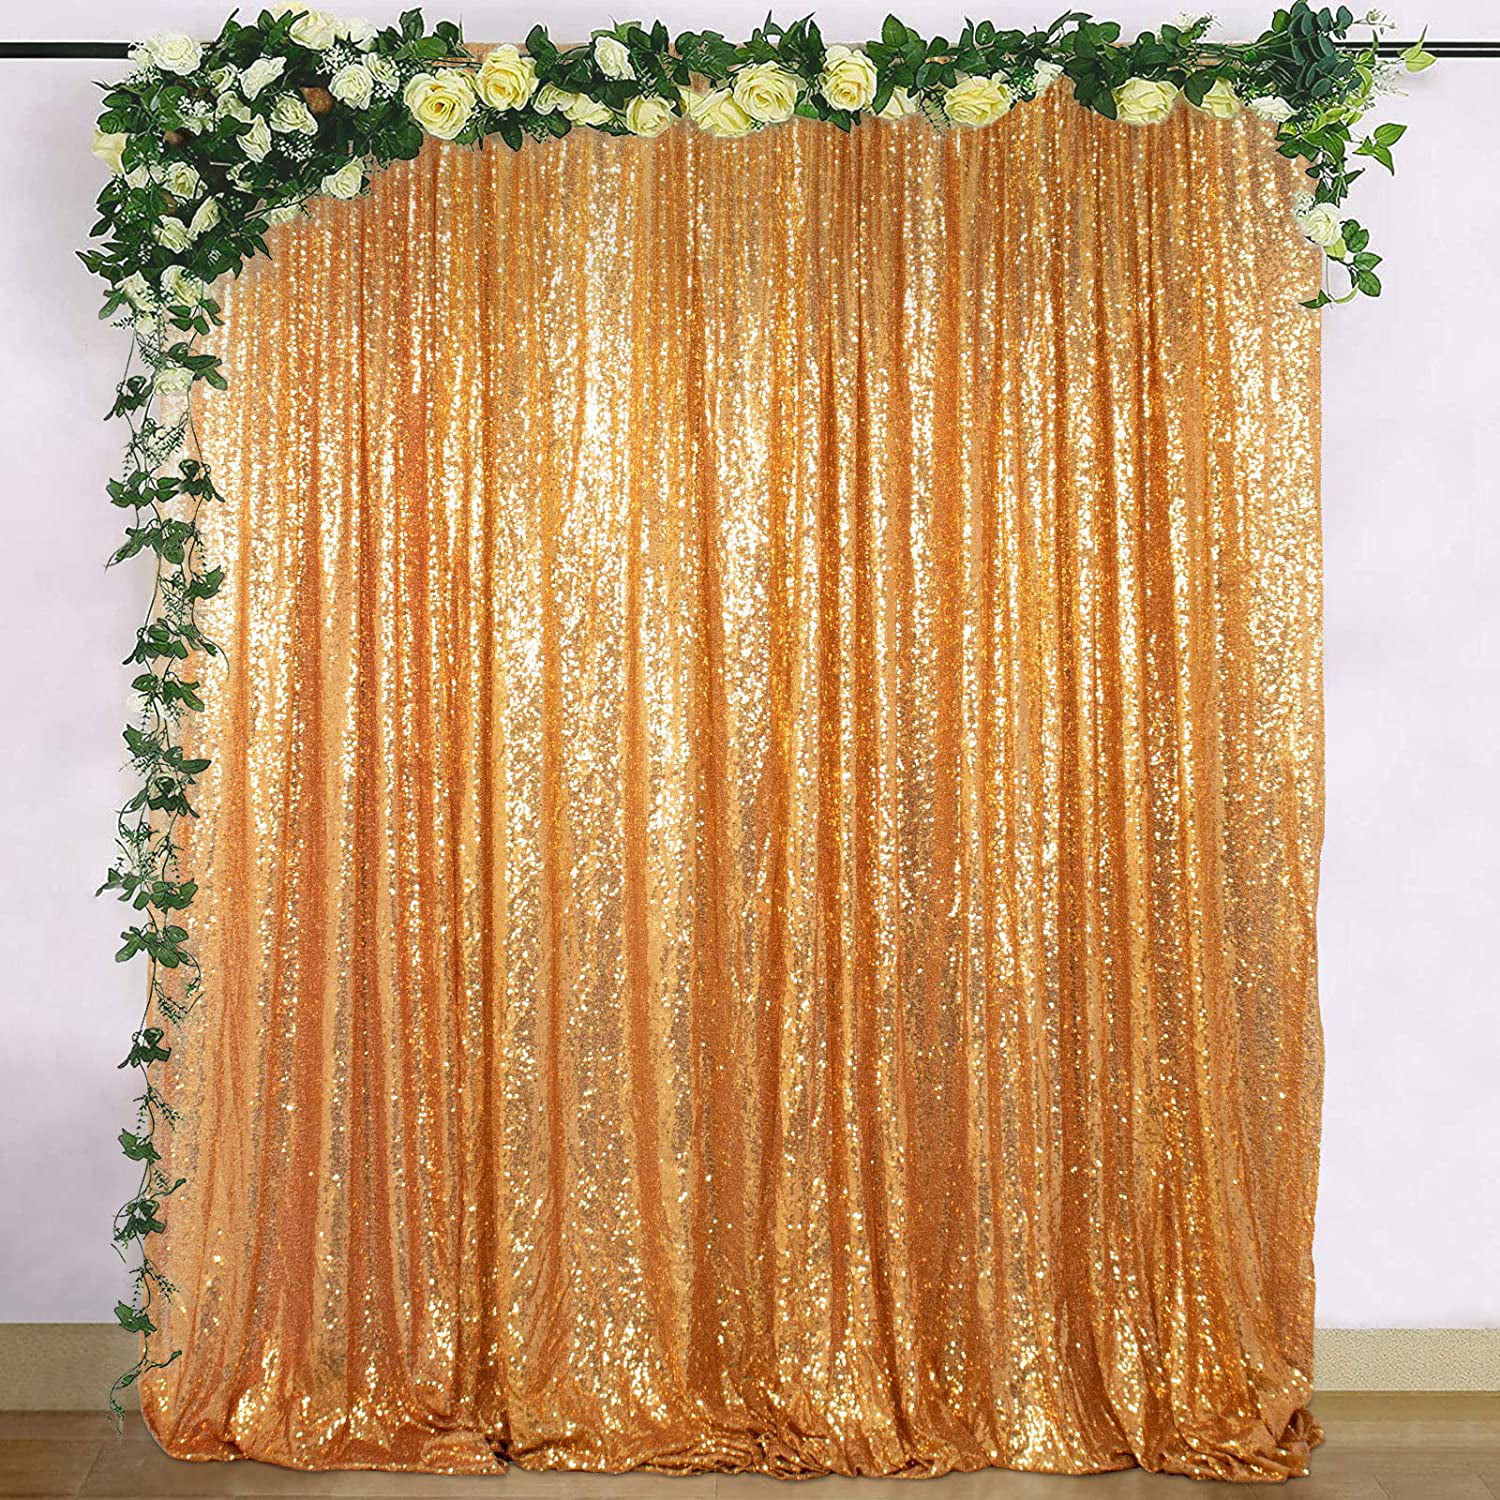 Zdada Rose Gold Sequin Backdrop 8x8ft Shimmer Party Sequin Backdrop Wedding Photo Booth Sequin Backdrop